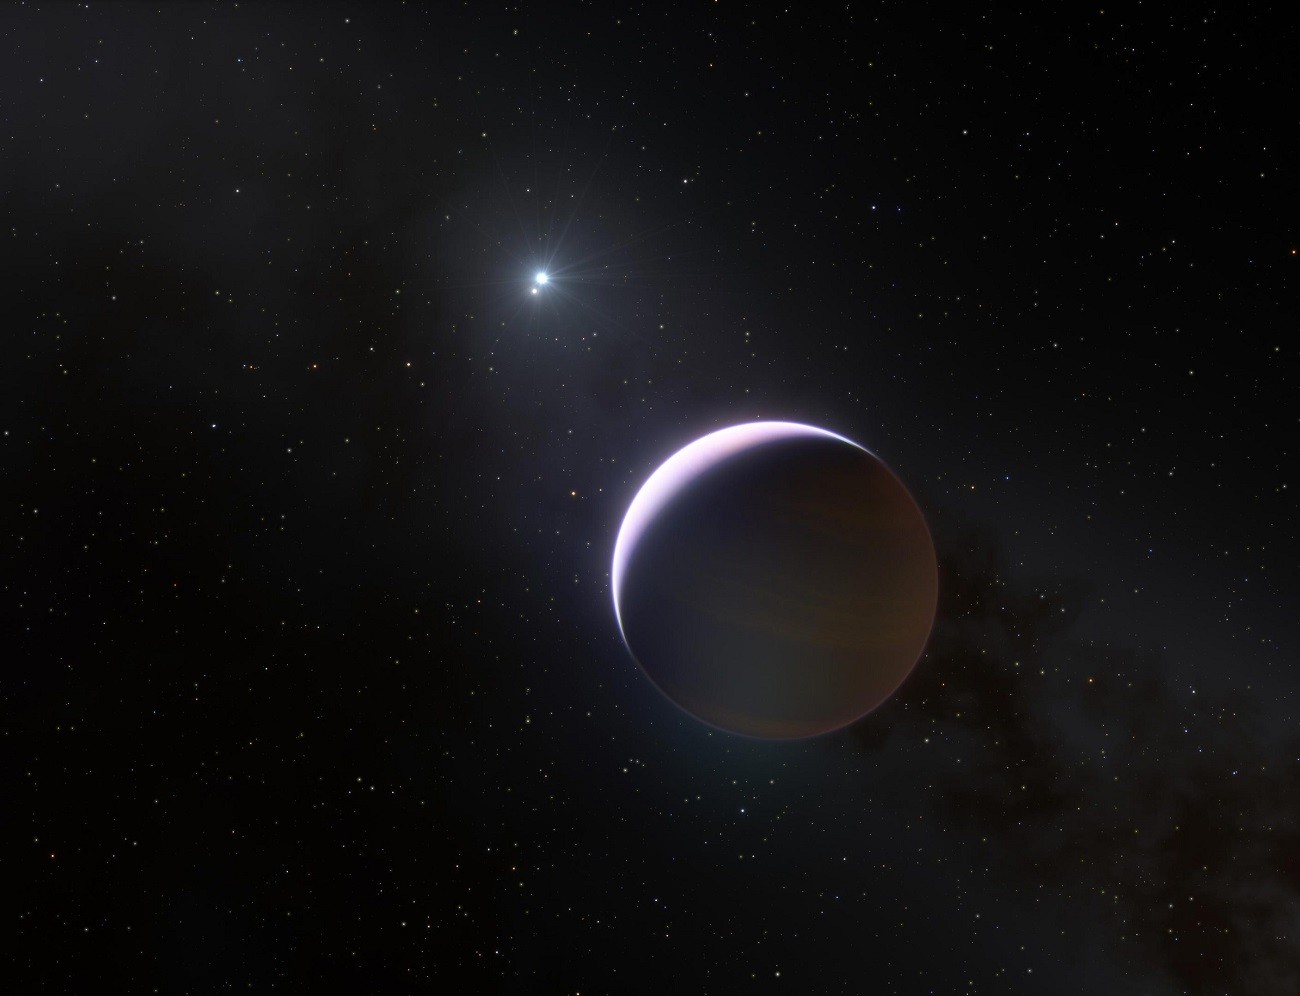 Nigdy wcześniej nie zaobserwowano planety wokół tak masywnej gwiazdy. Aż do teraz